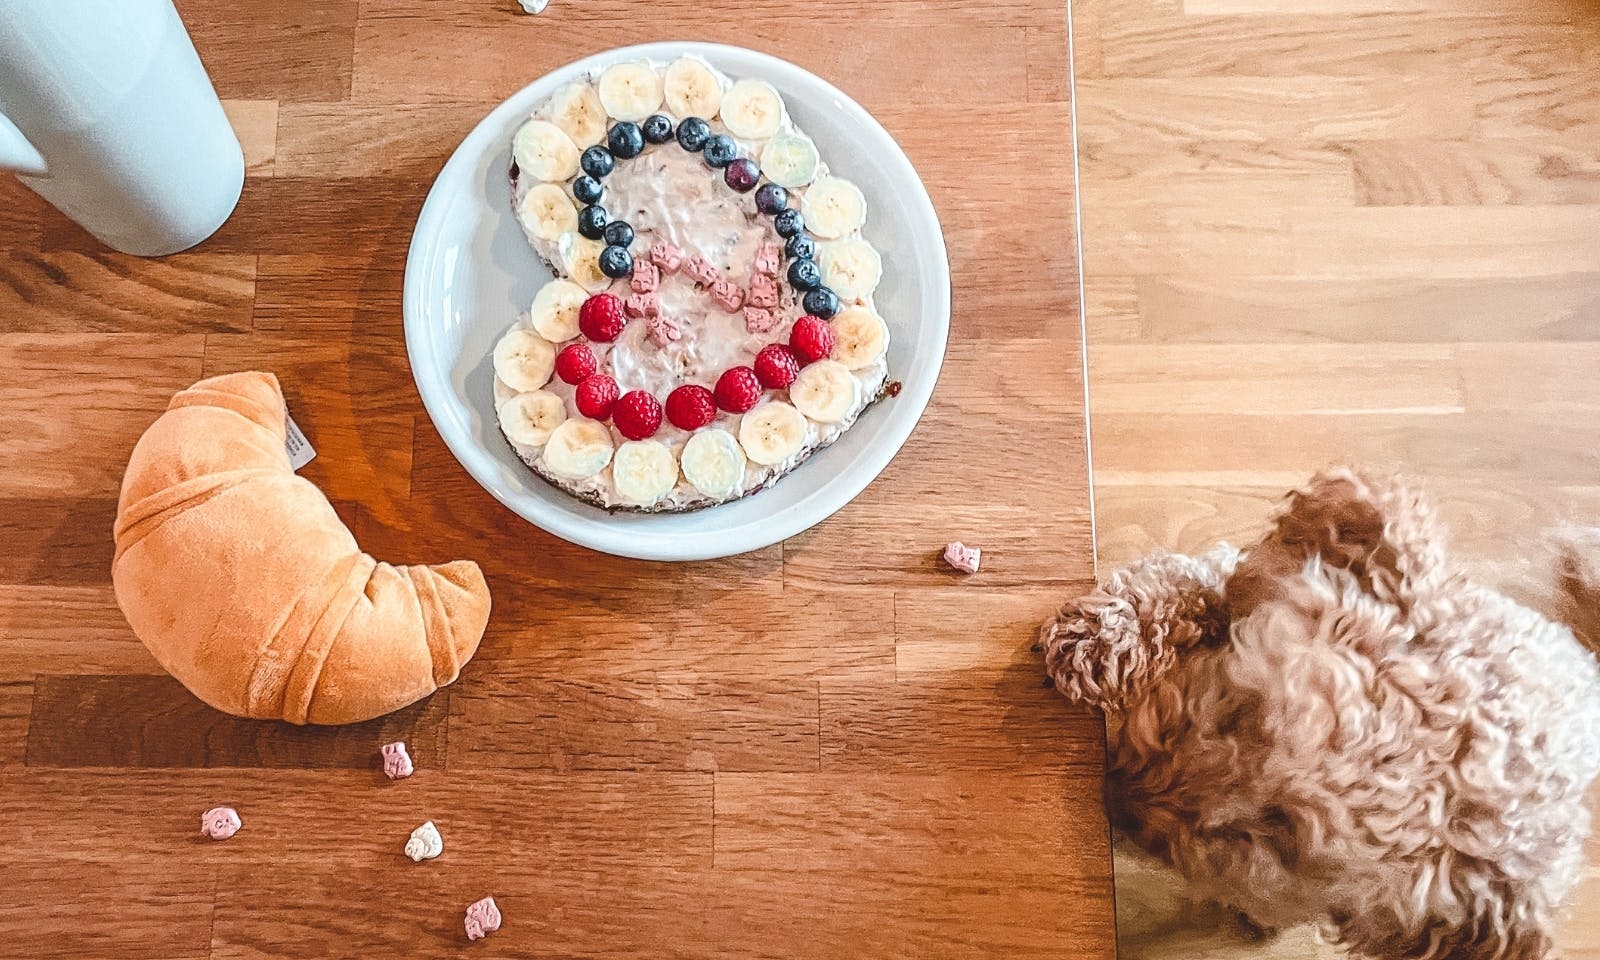 Hundegeburtstag feiern mit einer selbstgebackenen Torte